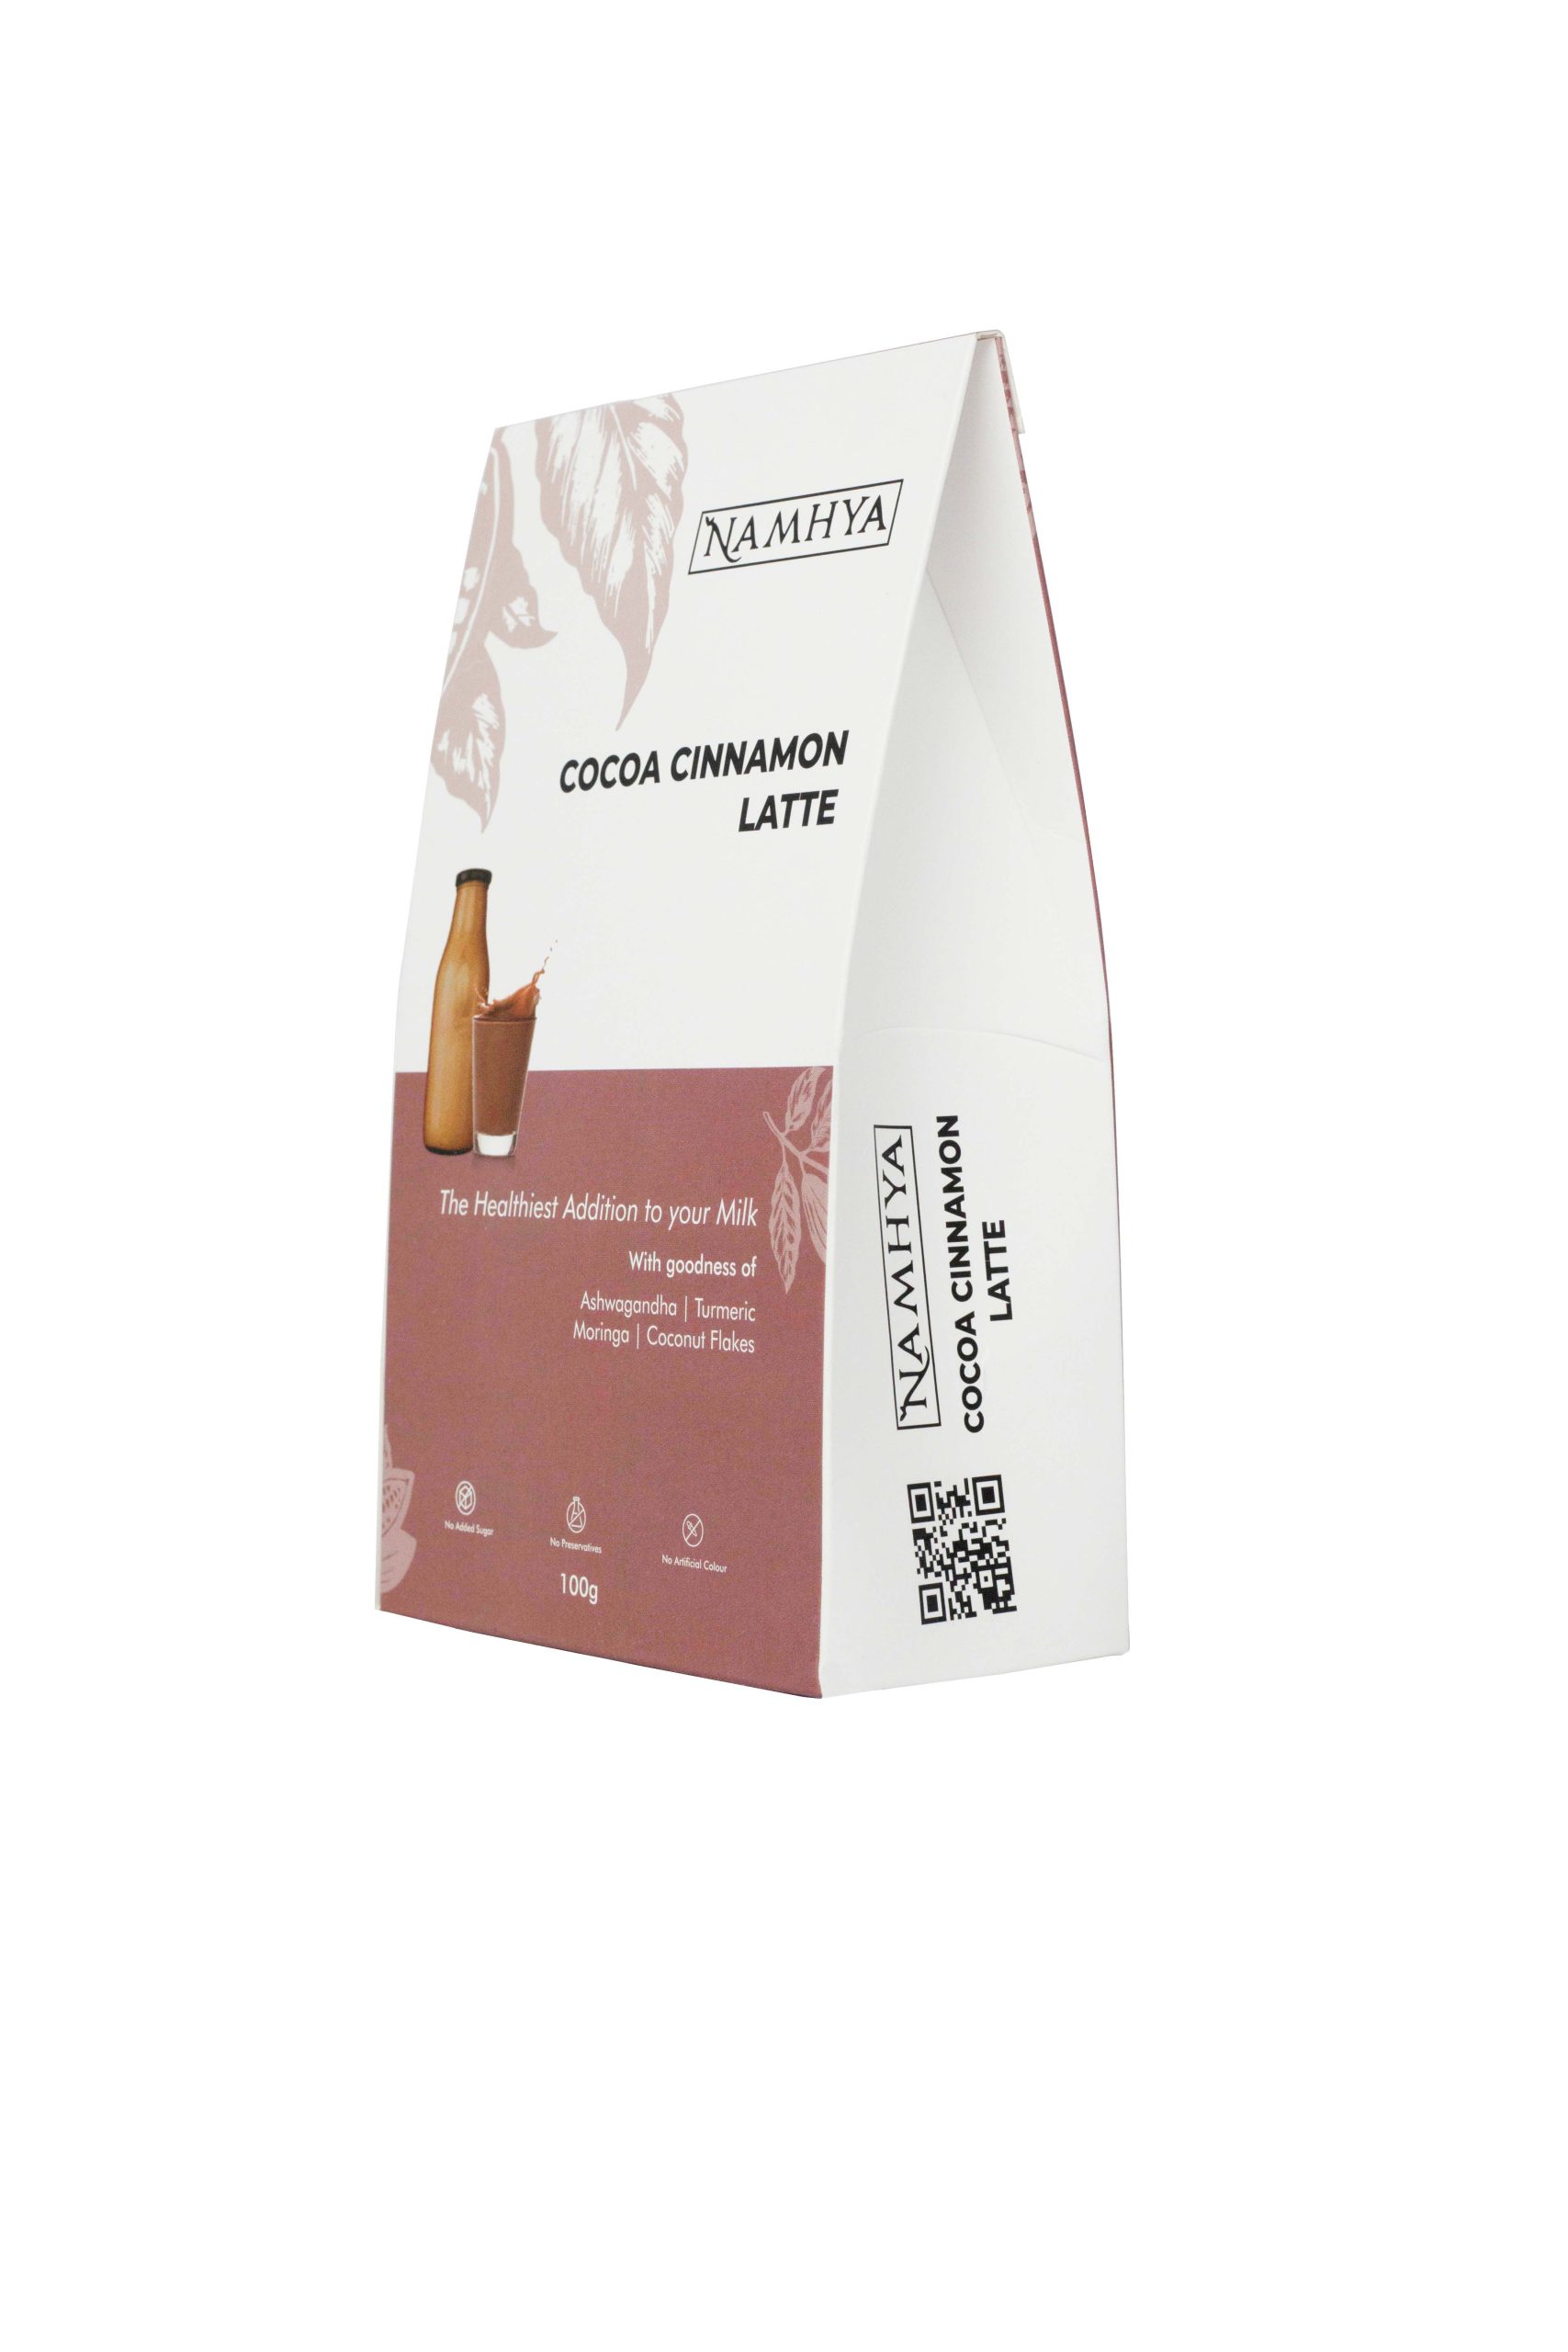 Product: Namhya Cocoa cinnamon Latte